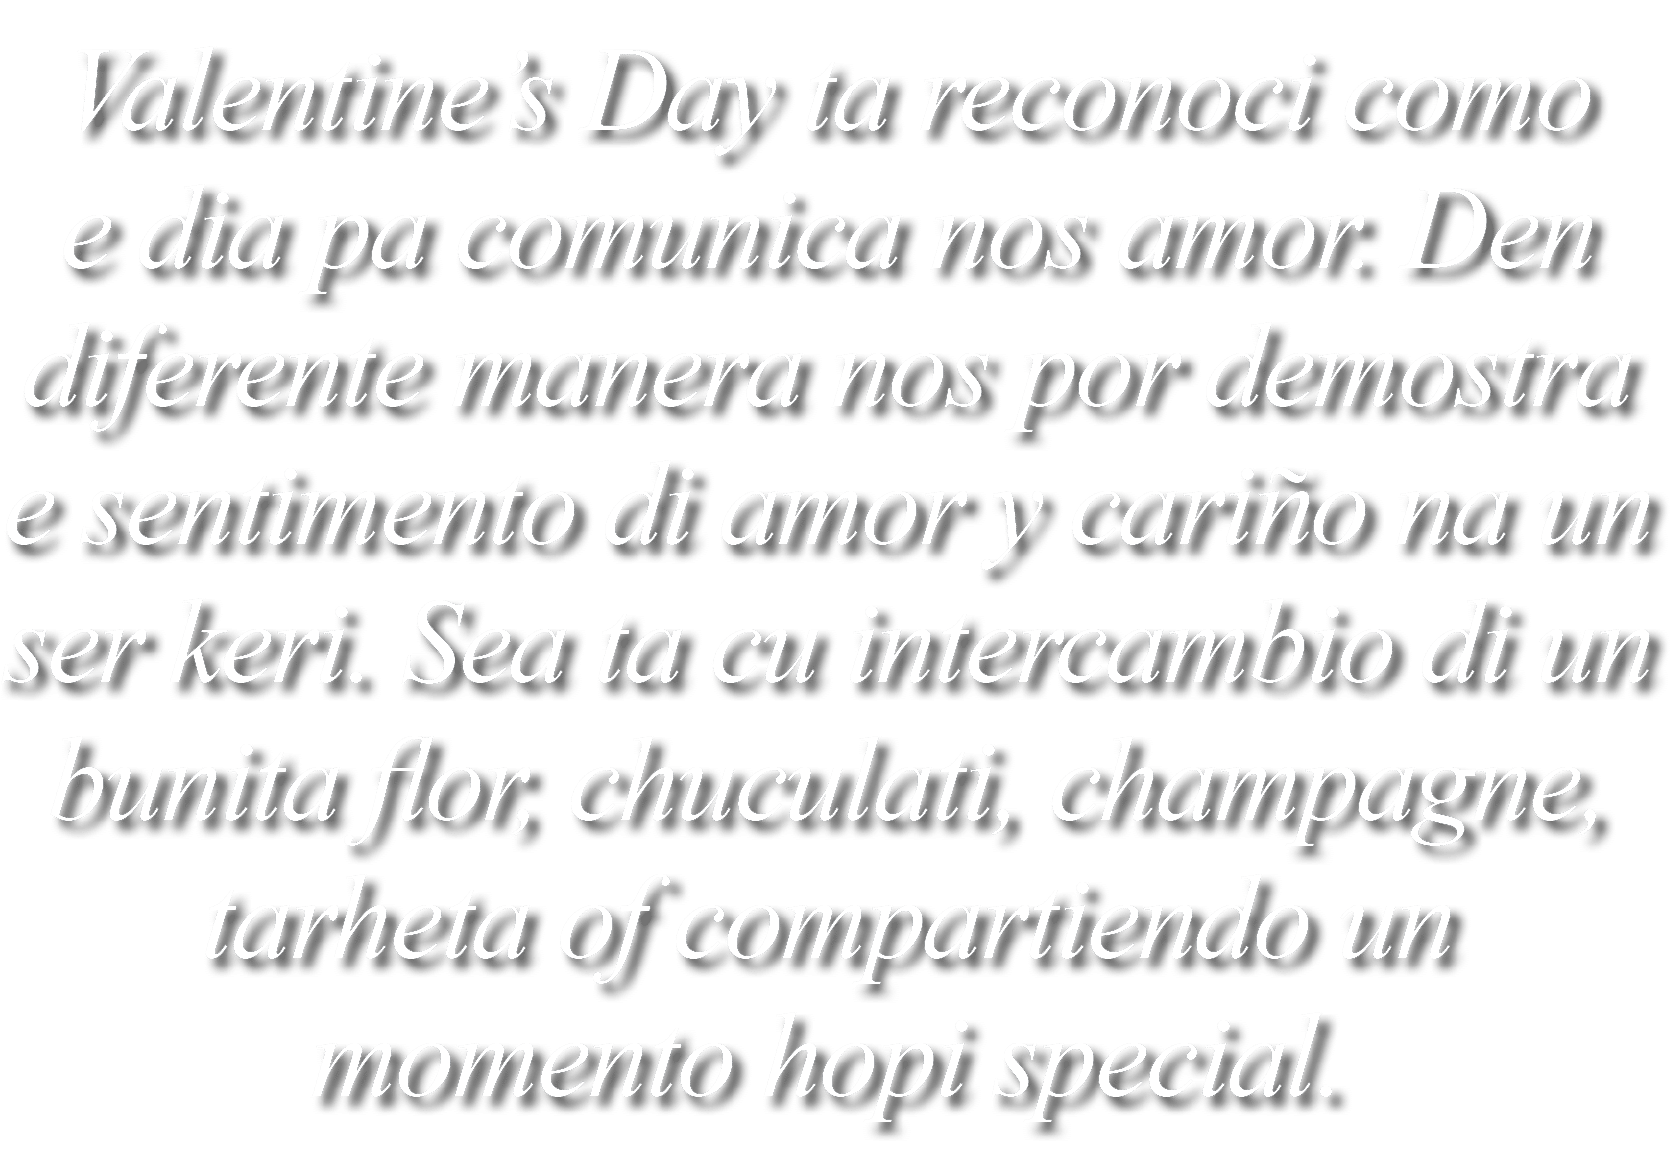 Valentine’s Day ta reconoci como e dia pa comunica nos amor. Den diferente manera nos por demostra e sentimento di am...